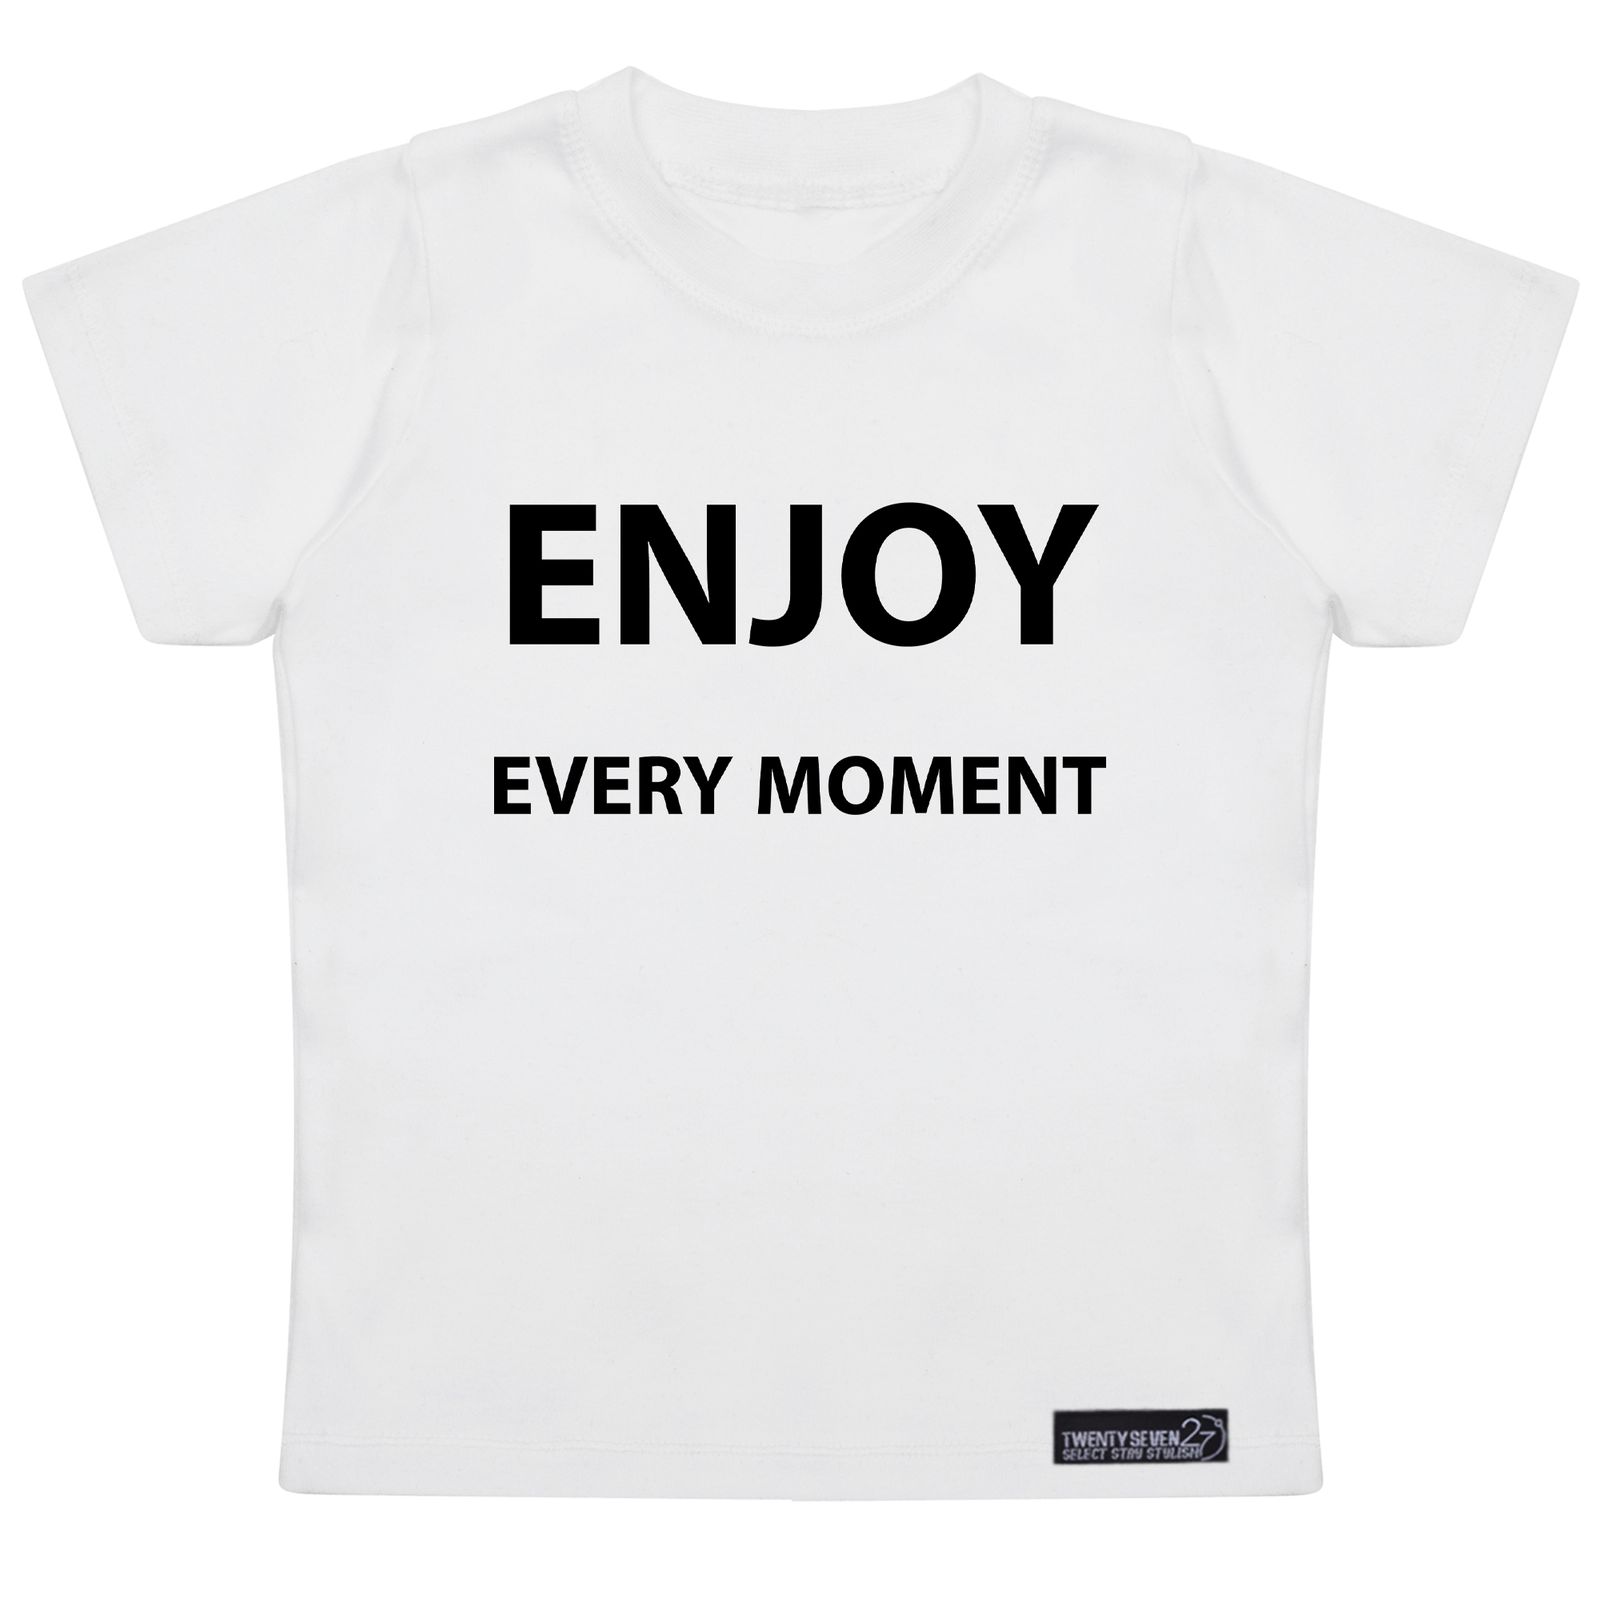 تی شرت آستین کوتاه دخترانه 27 مدل Enjoy Every Moment کد MH974 -  - 4